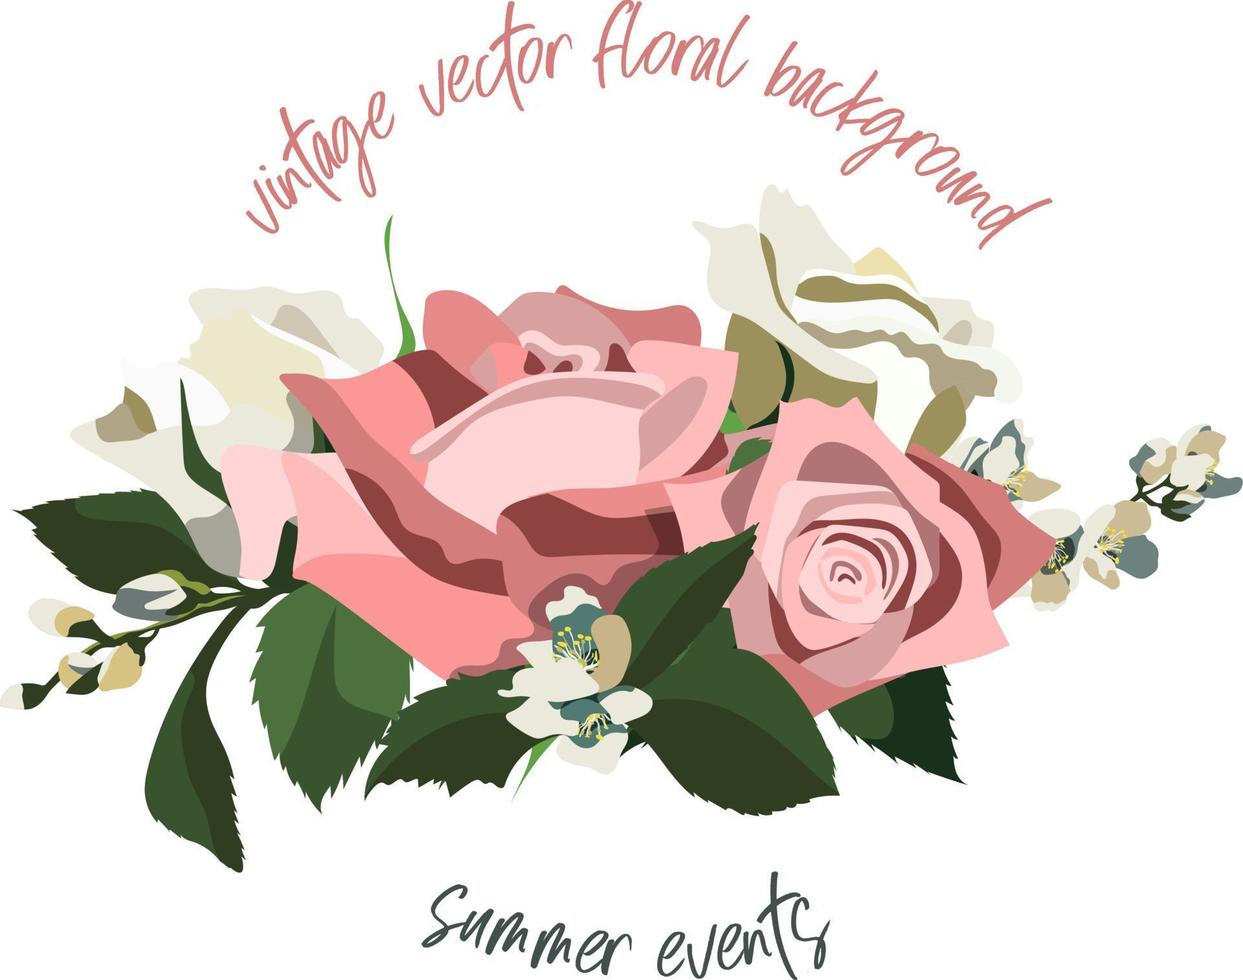 sfondo floreale in stile vintage con rose rosa e bianche, foglie e rami di gelsomino. isolato su sfondo bianco. illustrazione vettoriale